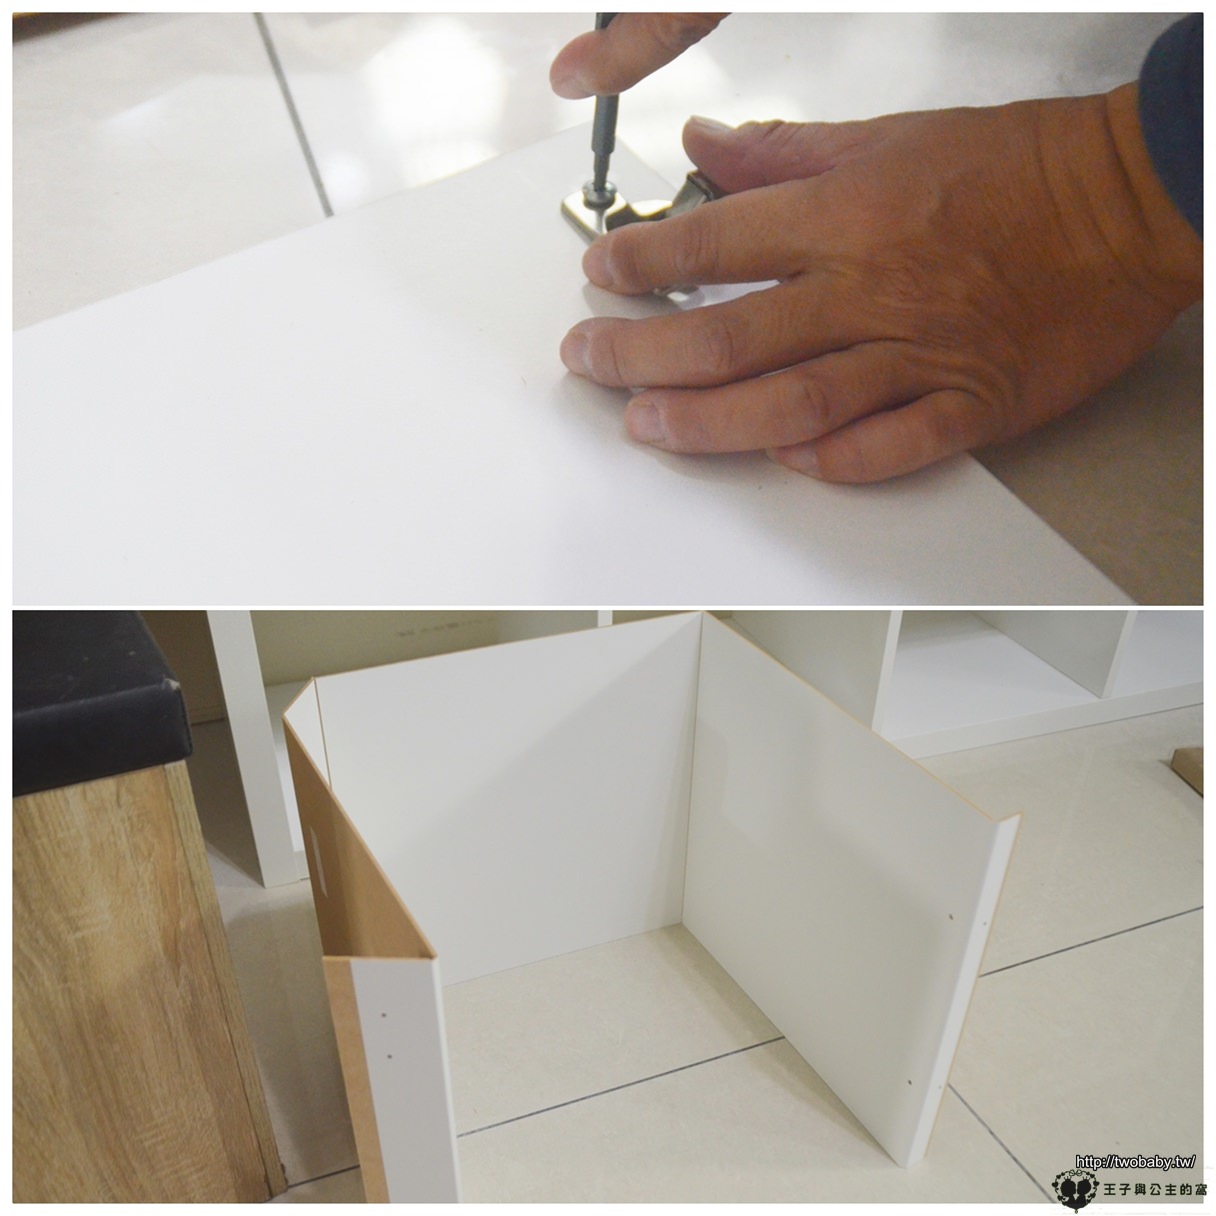 居家好物|IKEA宜家家居-KALLAX系列開箱 置物櫃改造成電視櫃 DIY電視櫃